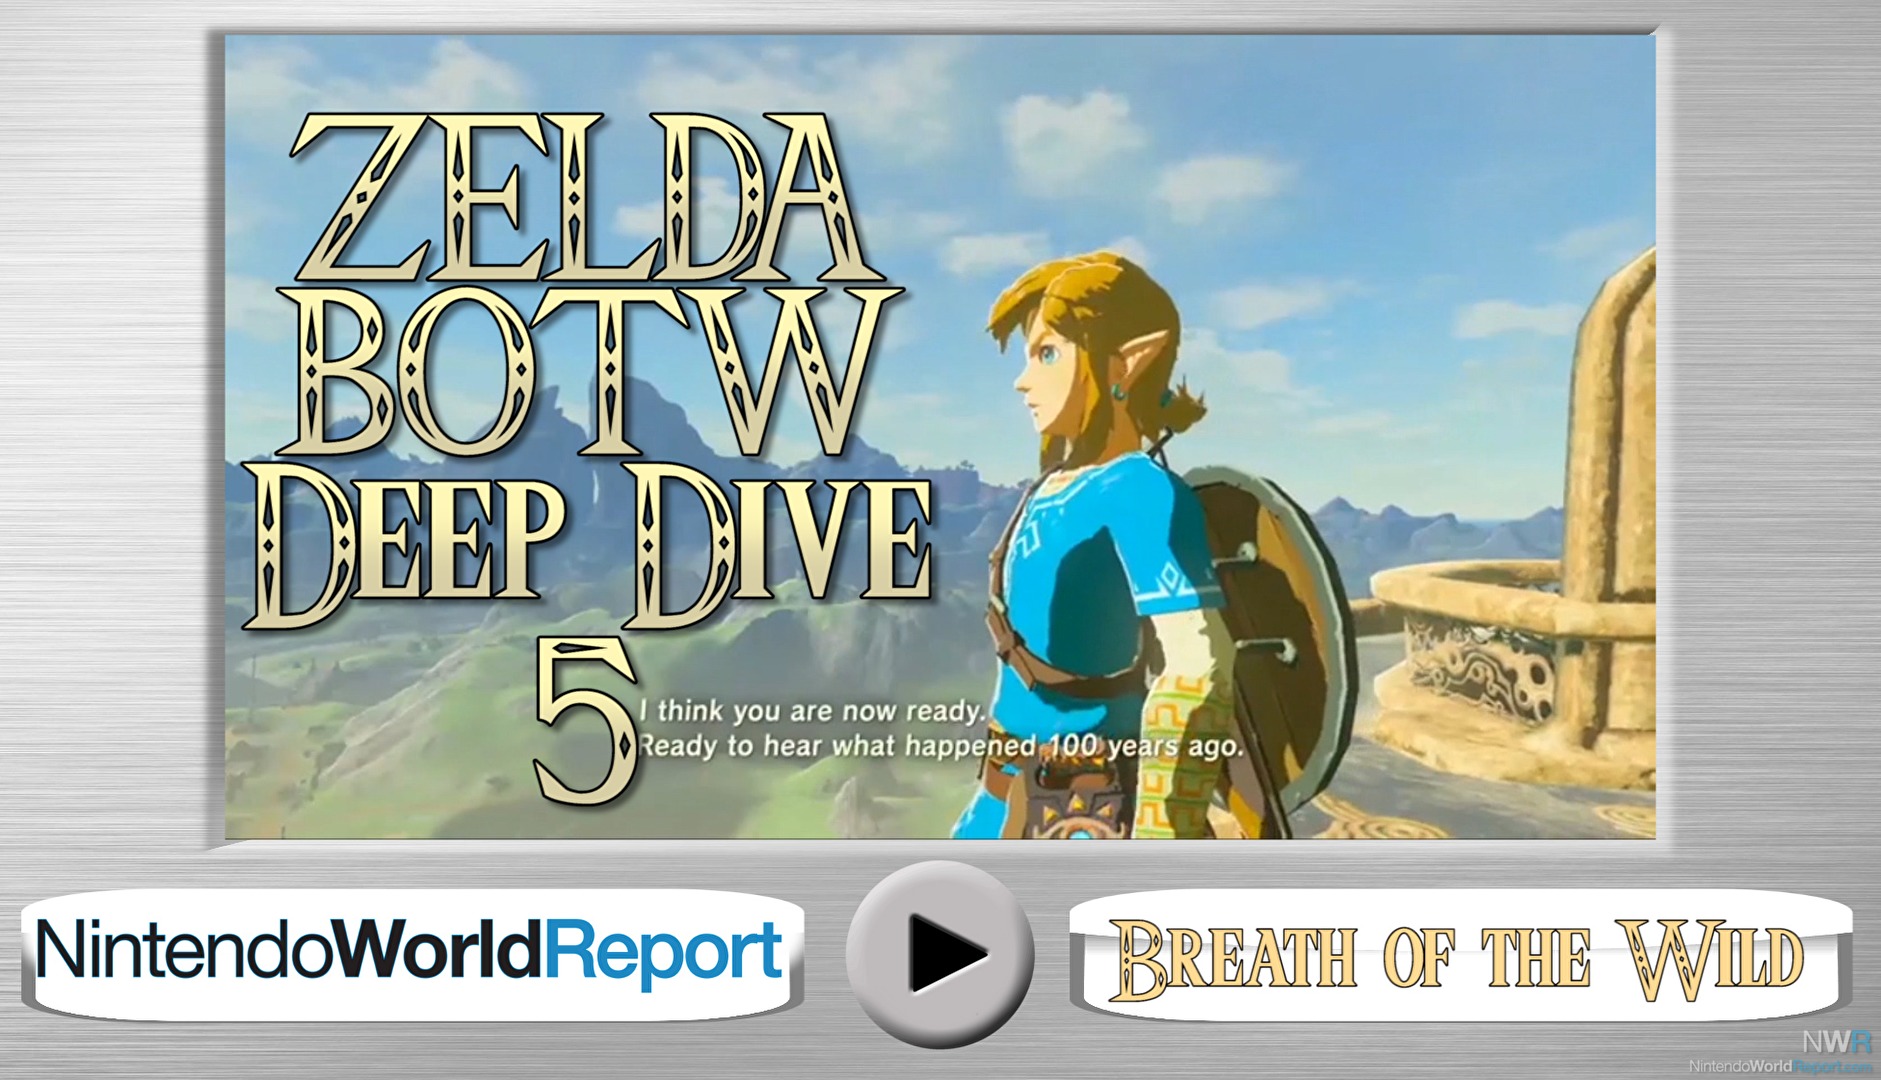 Zelda: Breath of the Wild Deep Dive 5 - Video - Nintendo World Report